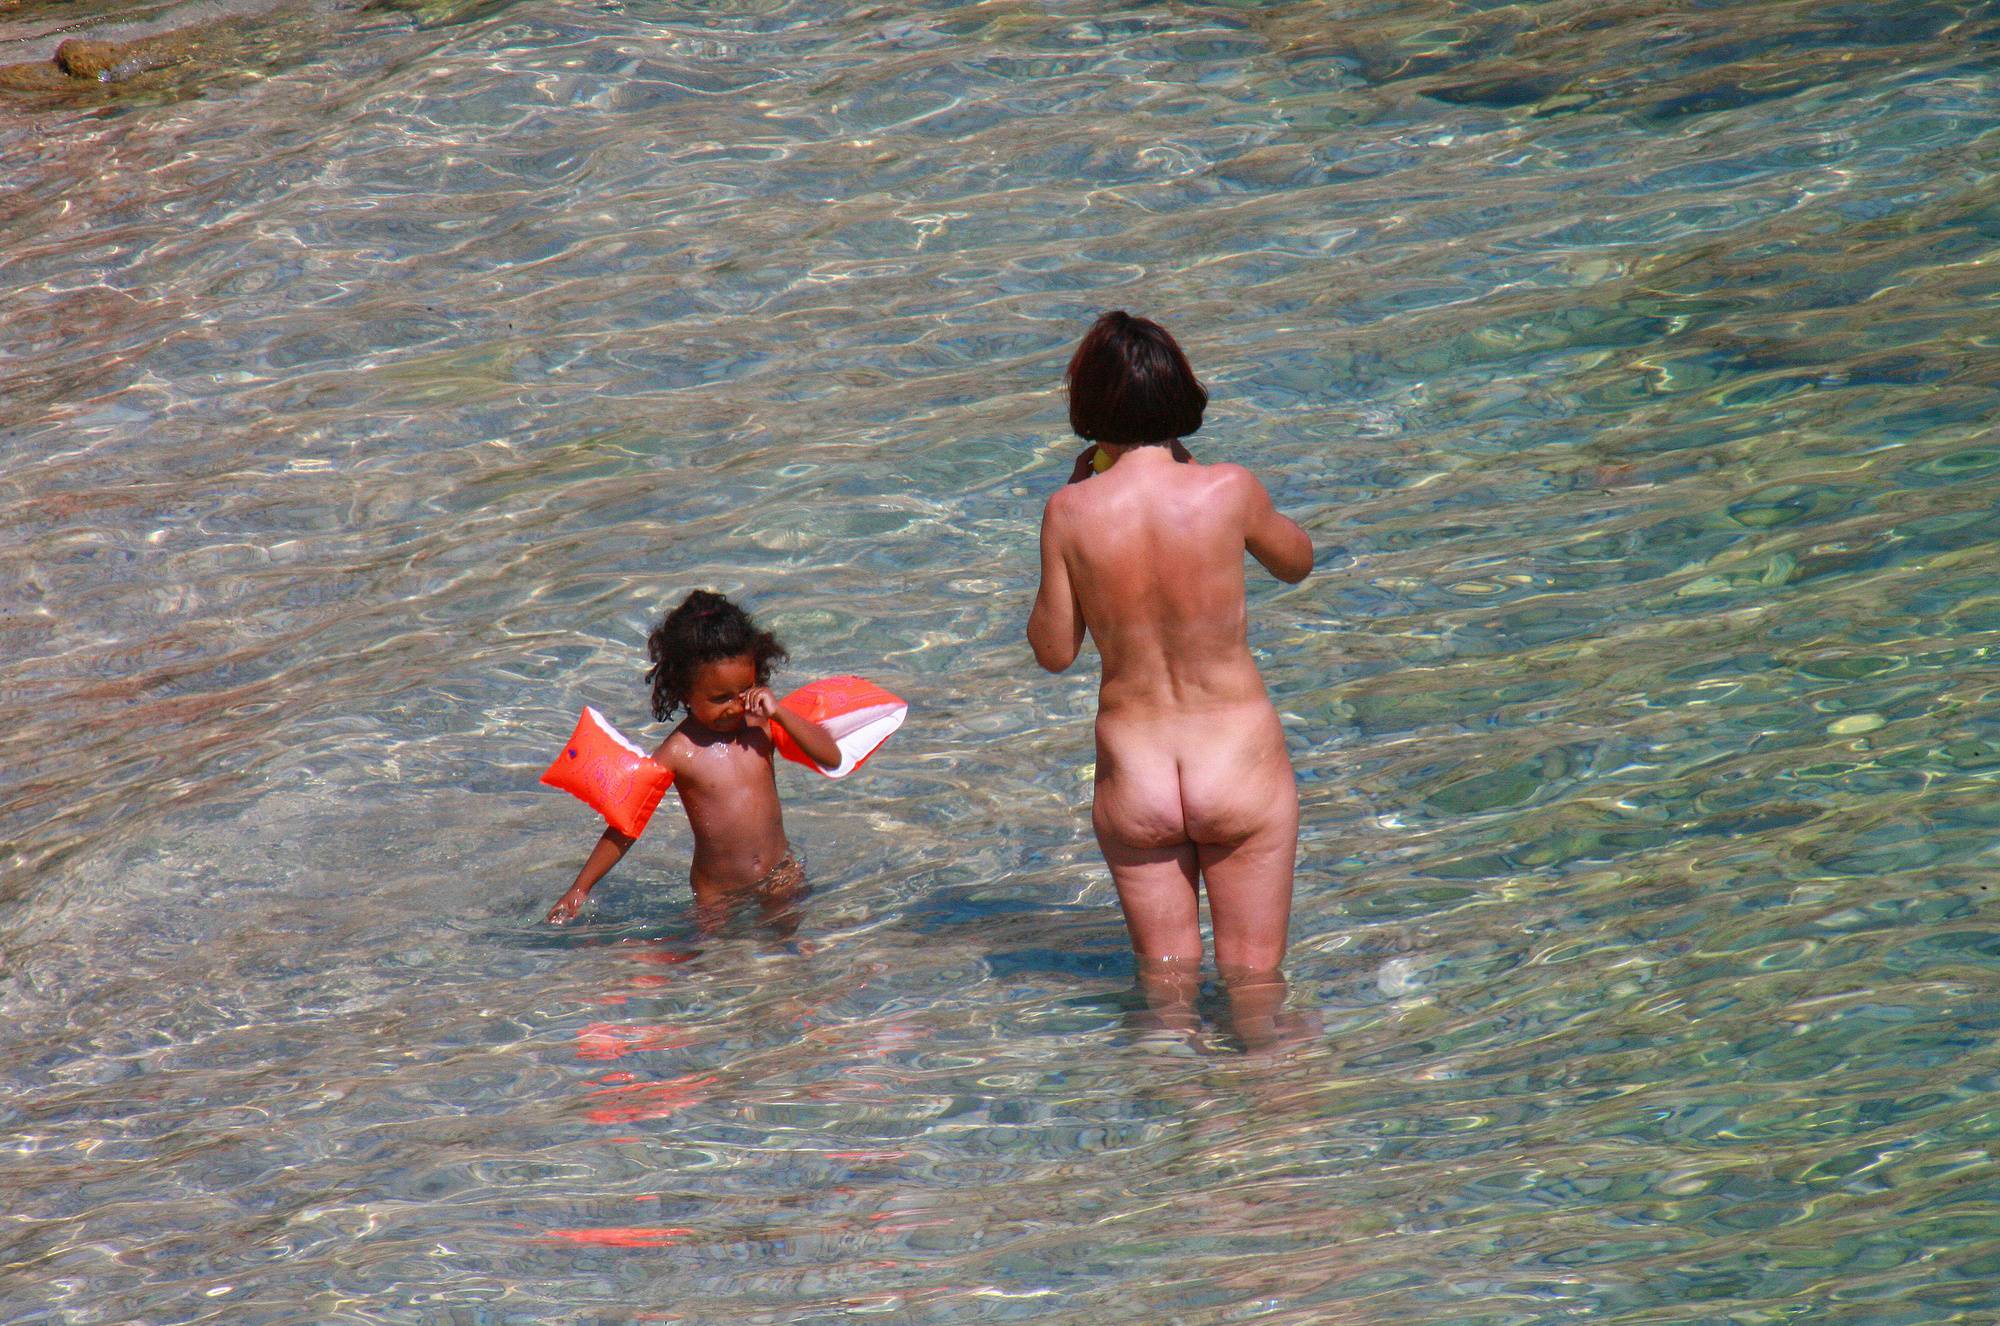 Pure Nudism Images-Ula FKK Beach Water Fun - 3